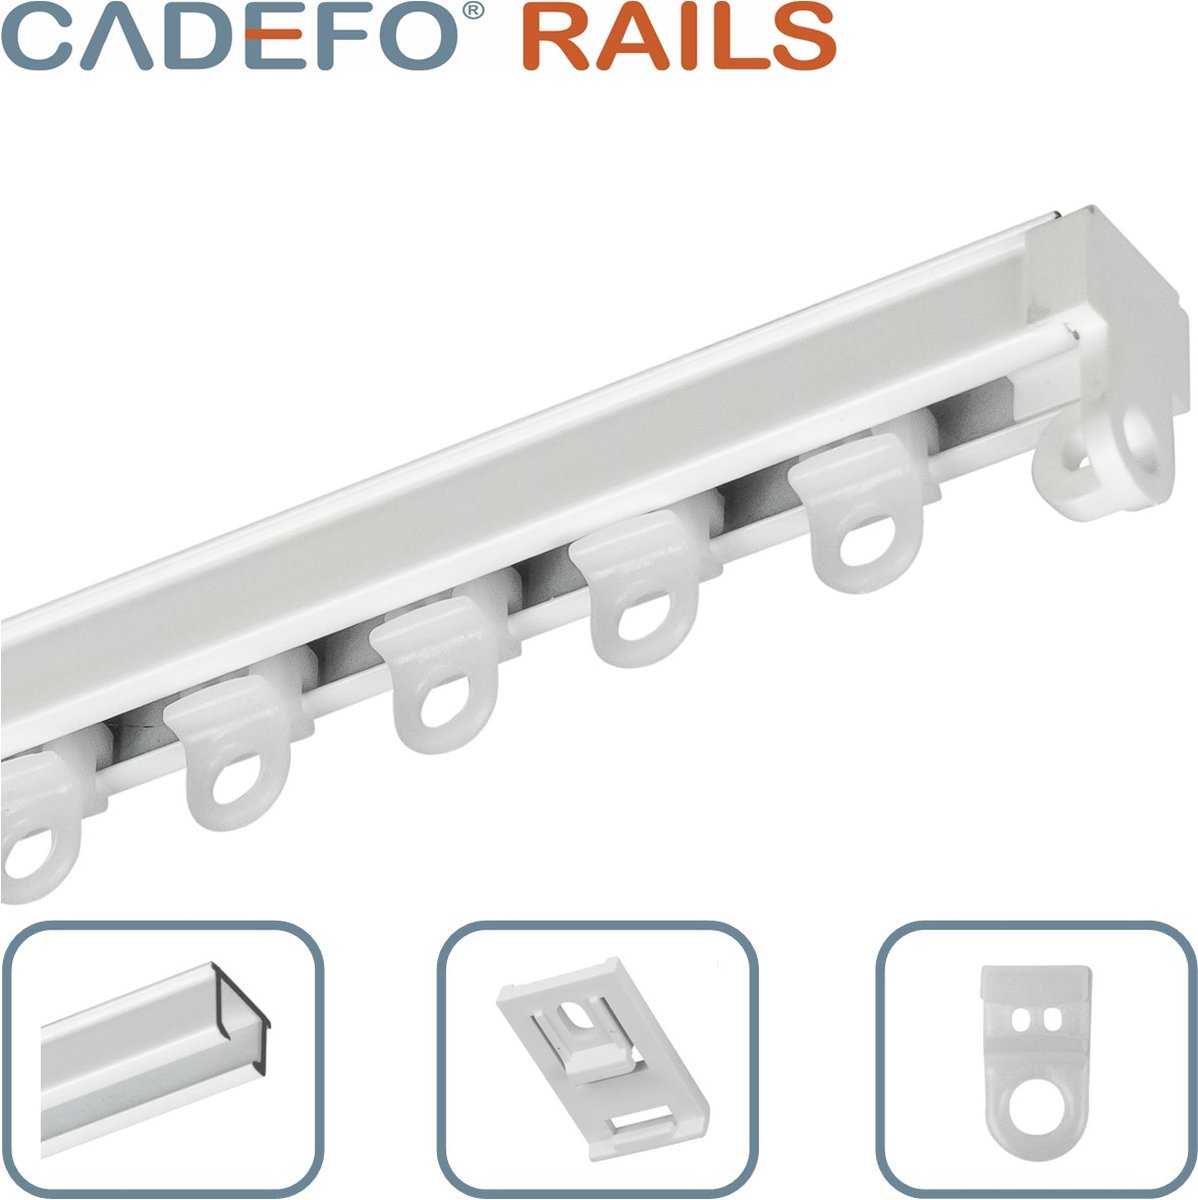 CADEFO RAILS (351 - 400 cm) Gordijnrails - Compleet op maat! - UIT 1 STUK - Leverbaar tot 6 meter - Plafondbevestiging - Lengte 360 cm